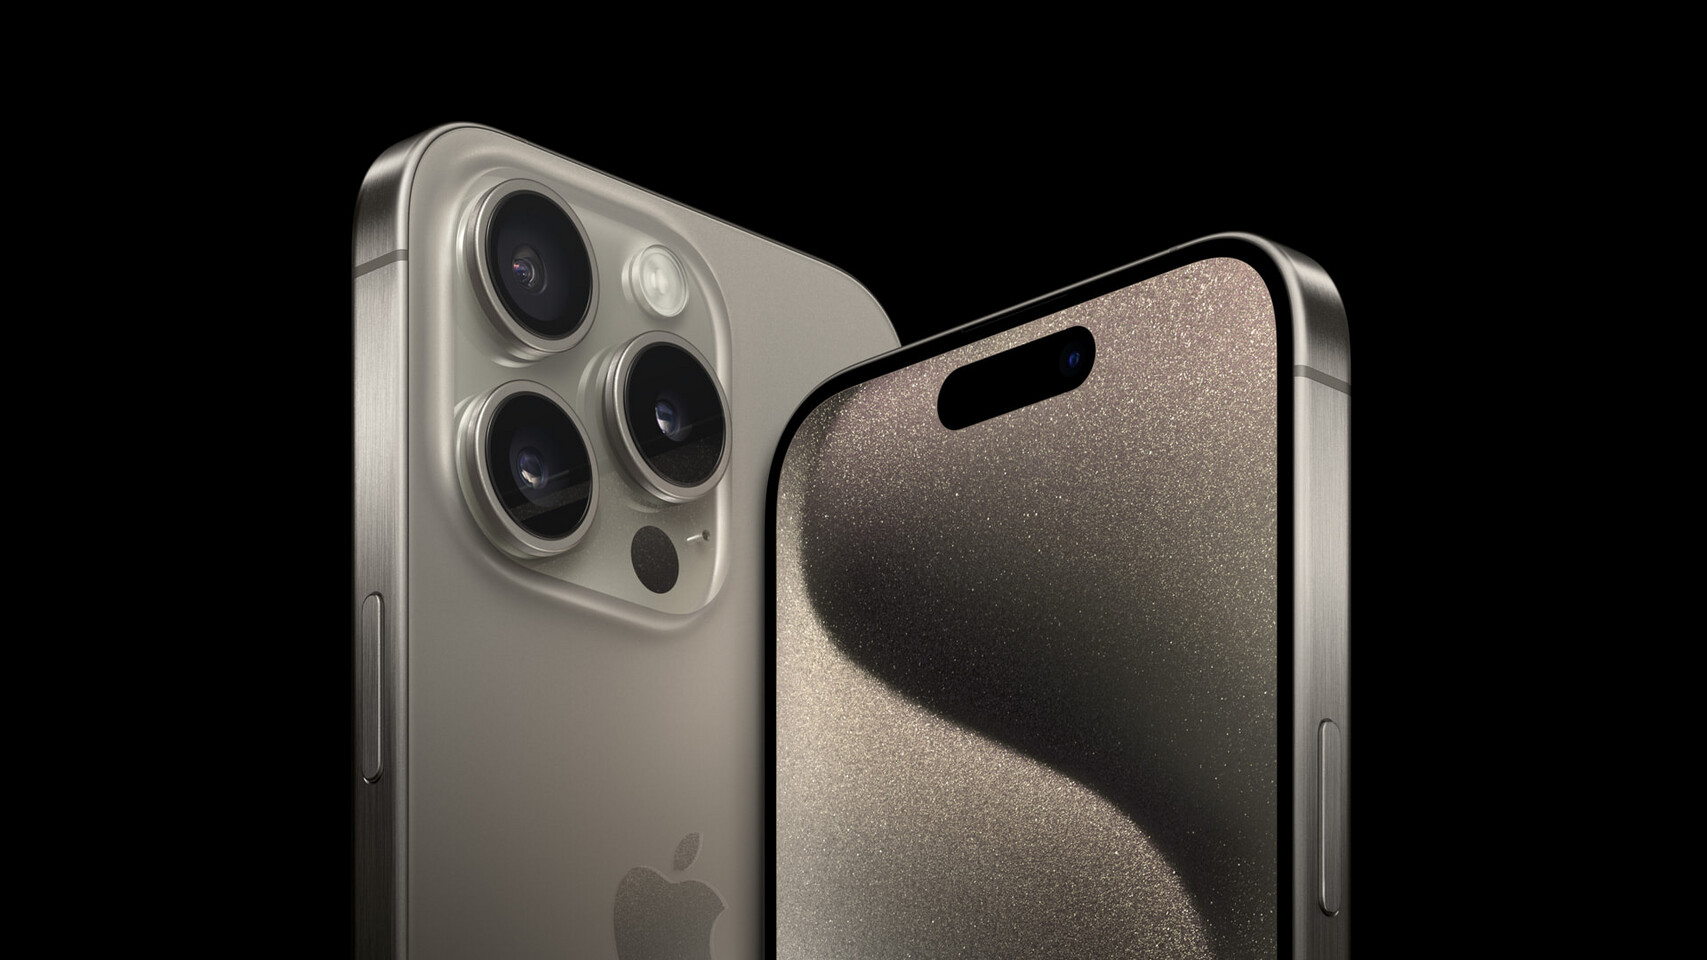 GTA 5 GRAND THEFT AUTO 3 iPhone 12 Pro Max Case